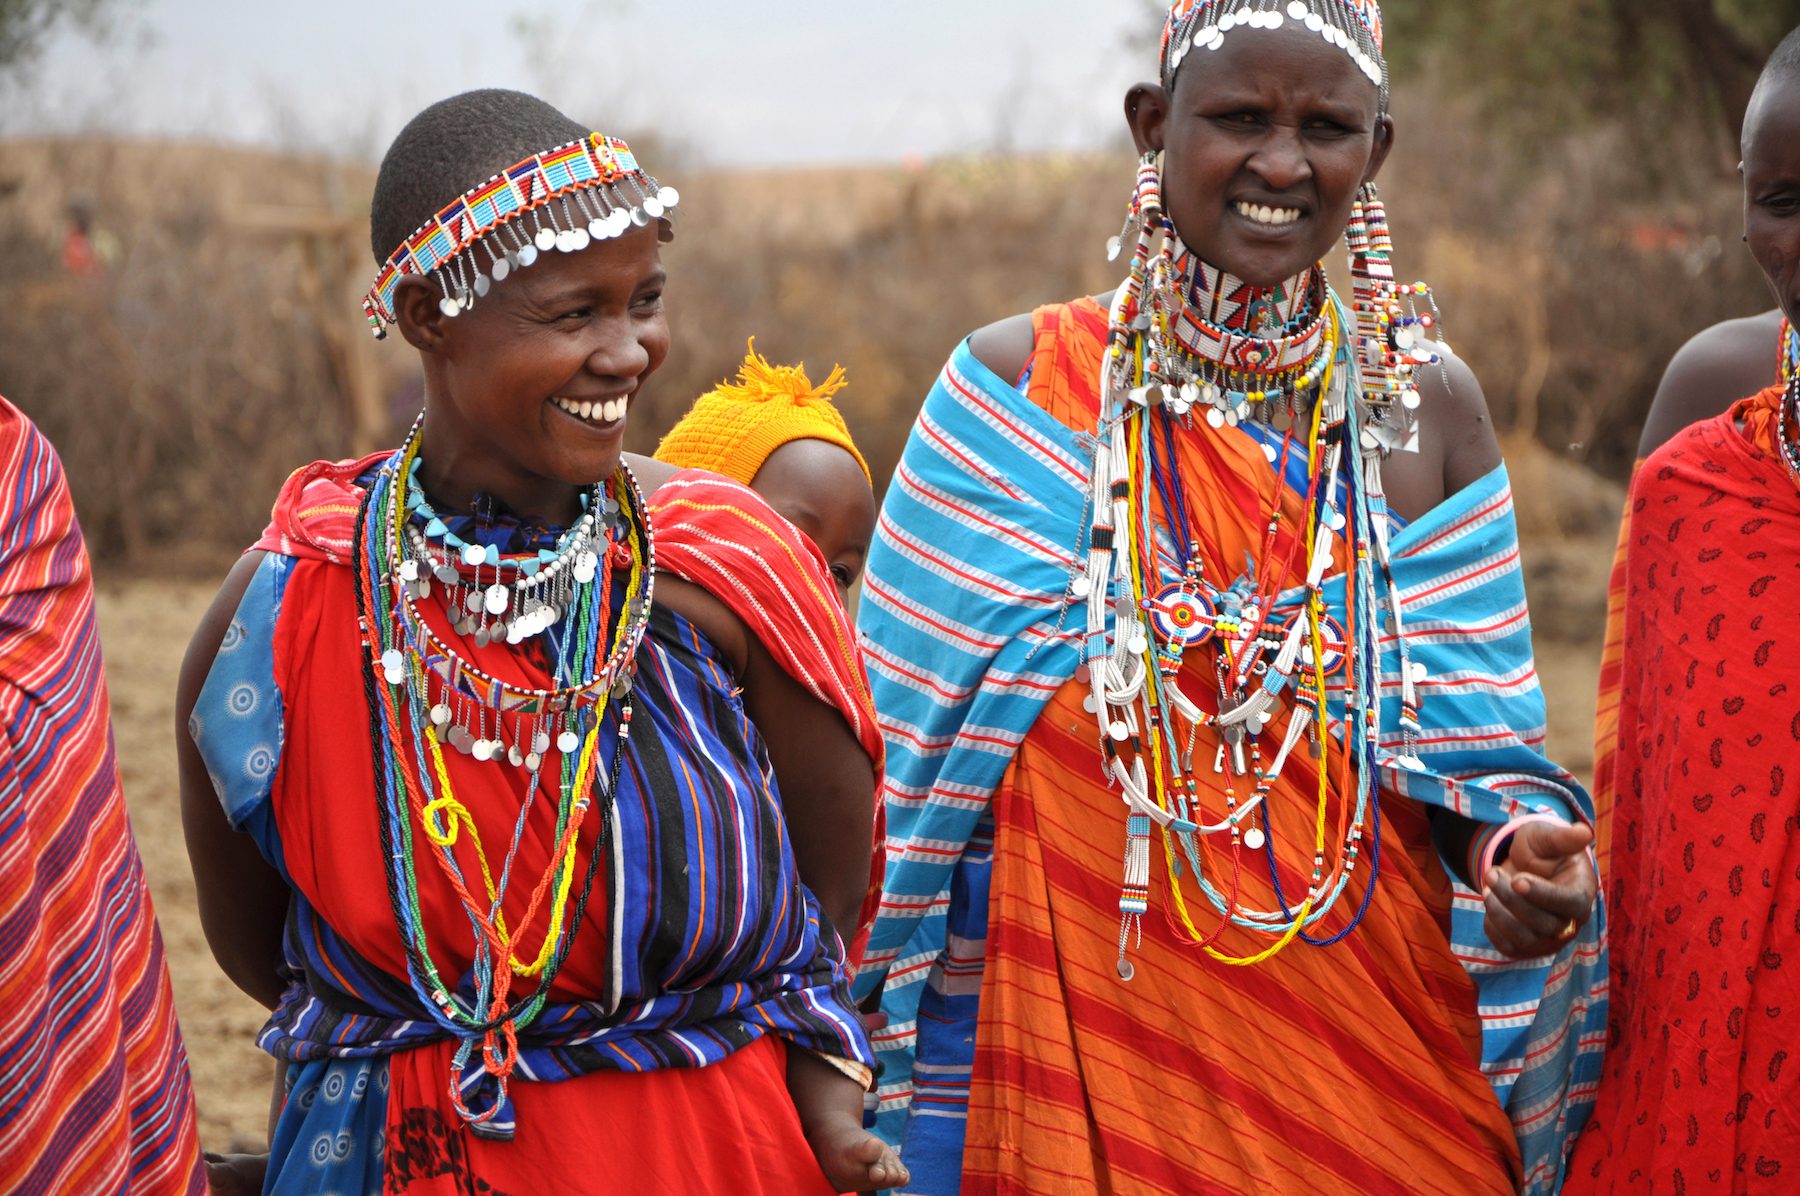 Women in Maasai society